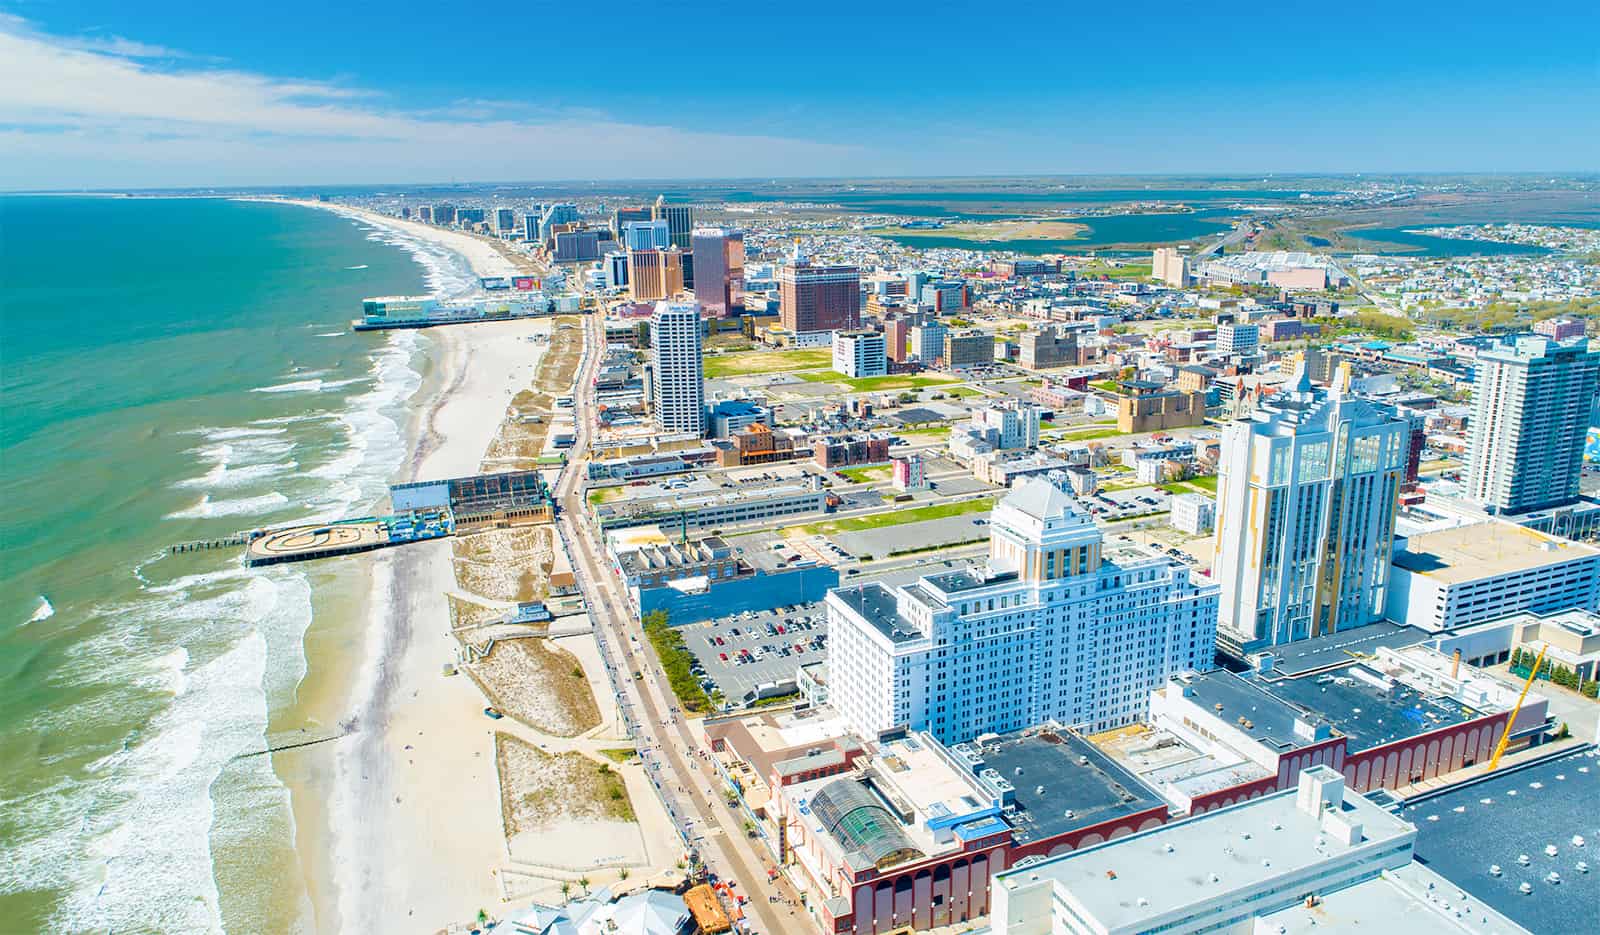 Aerial View of Atlantic City